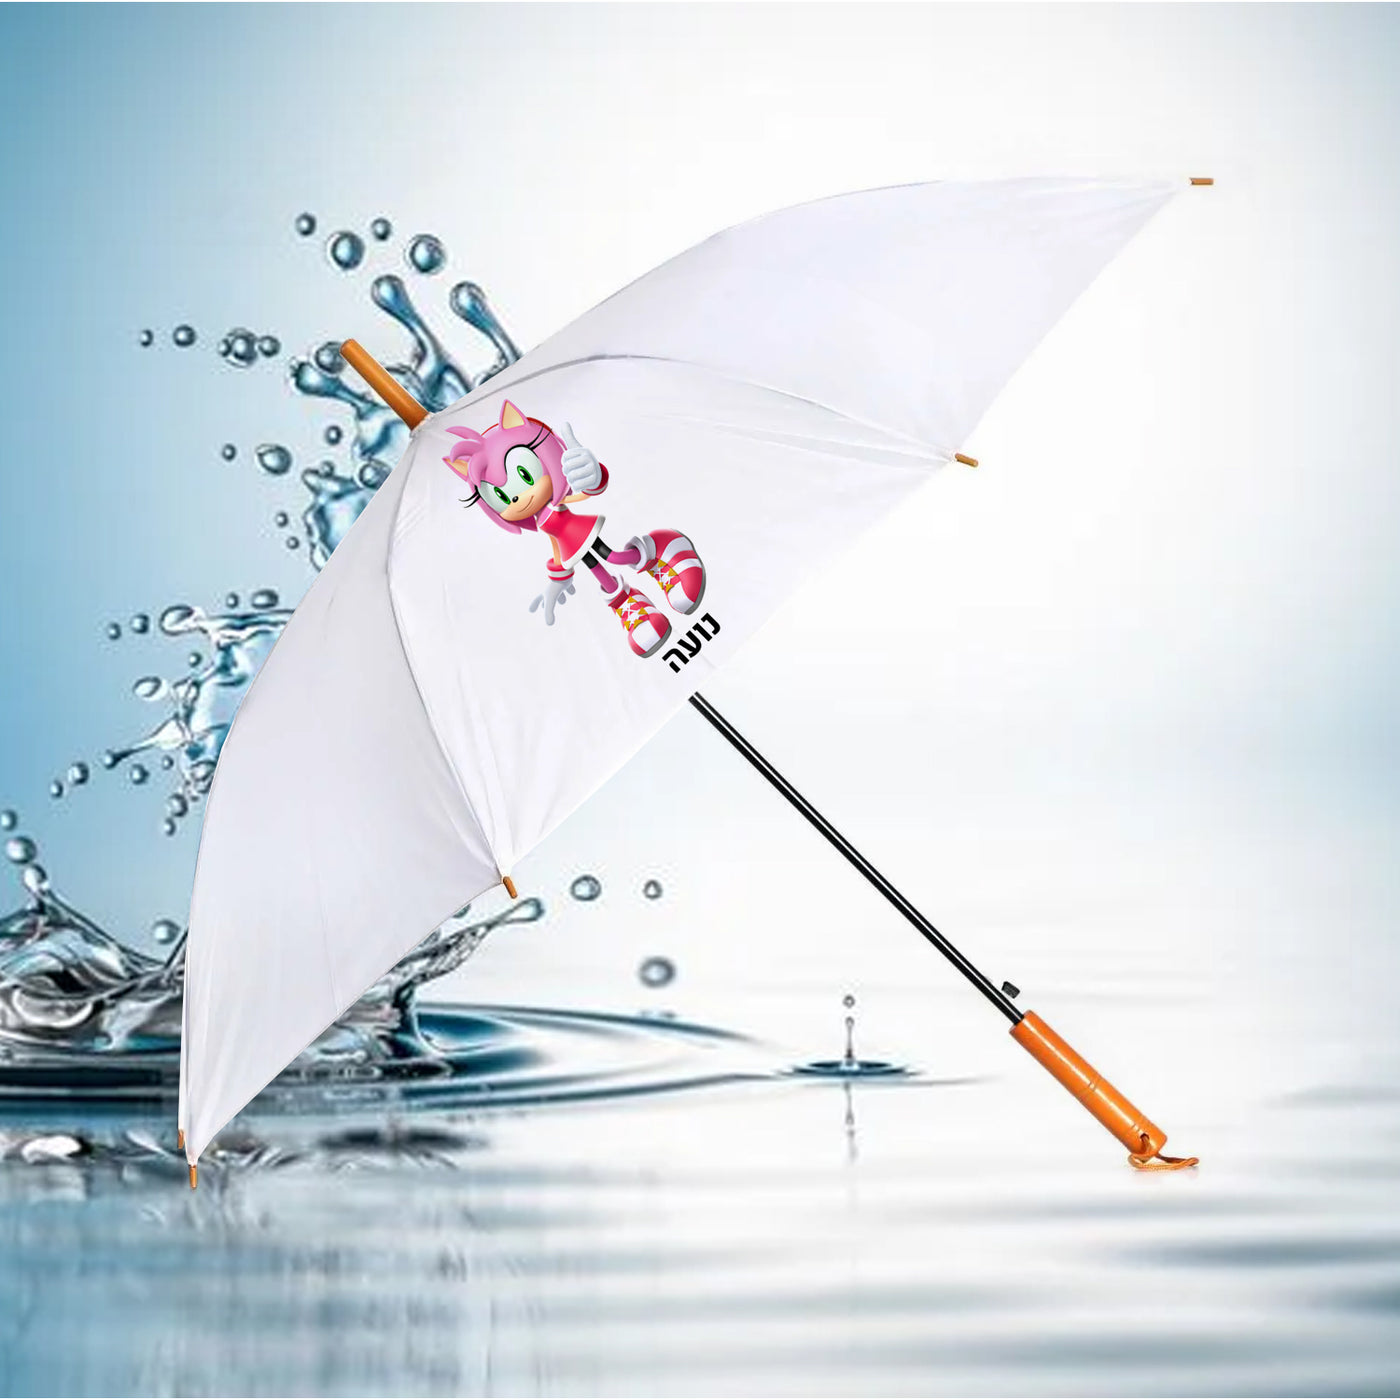 מטרייה מעוצבת עם שם אישי- איימי רוז